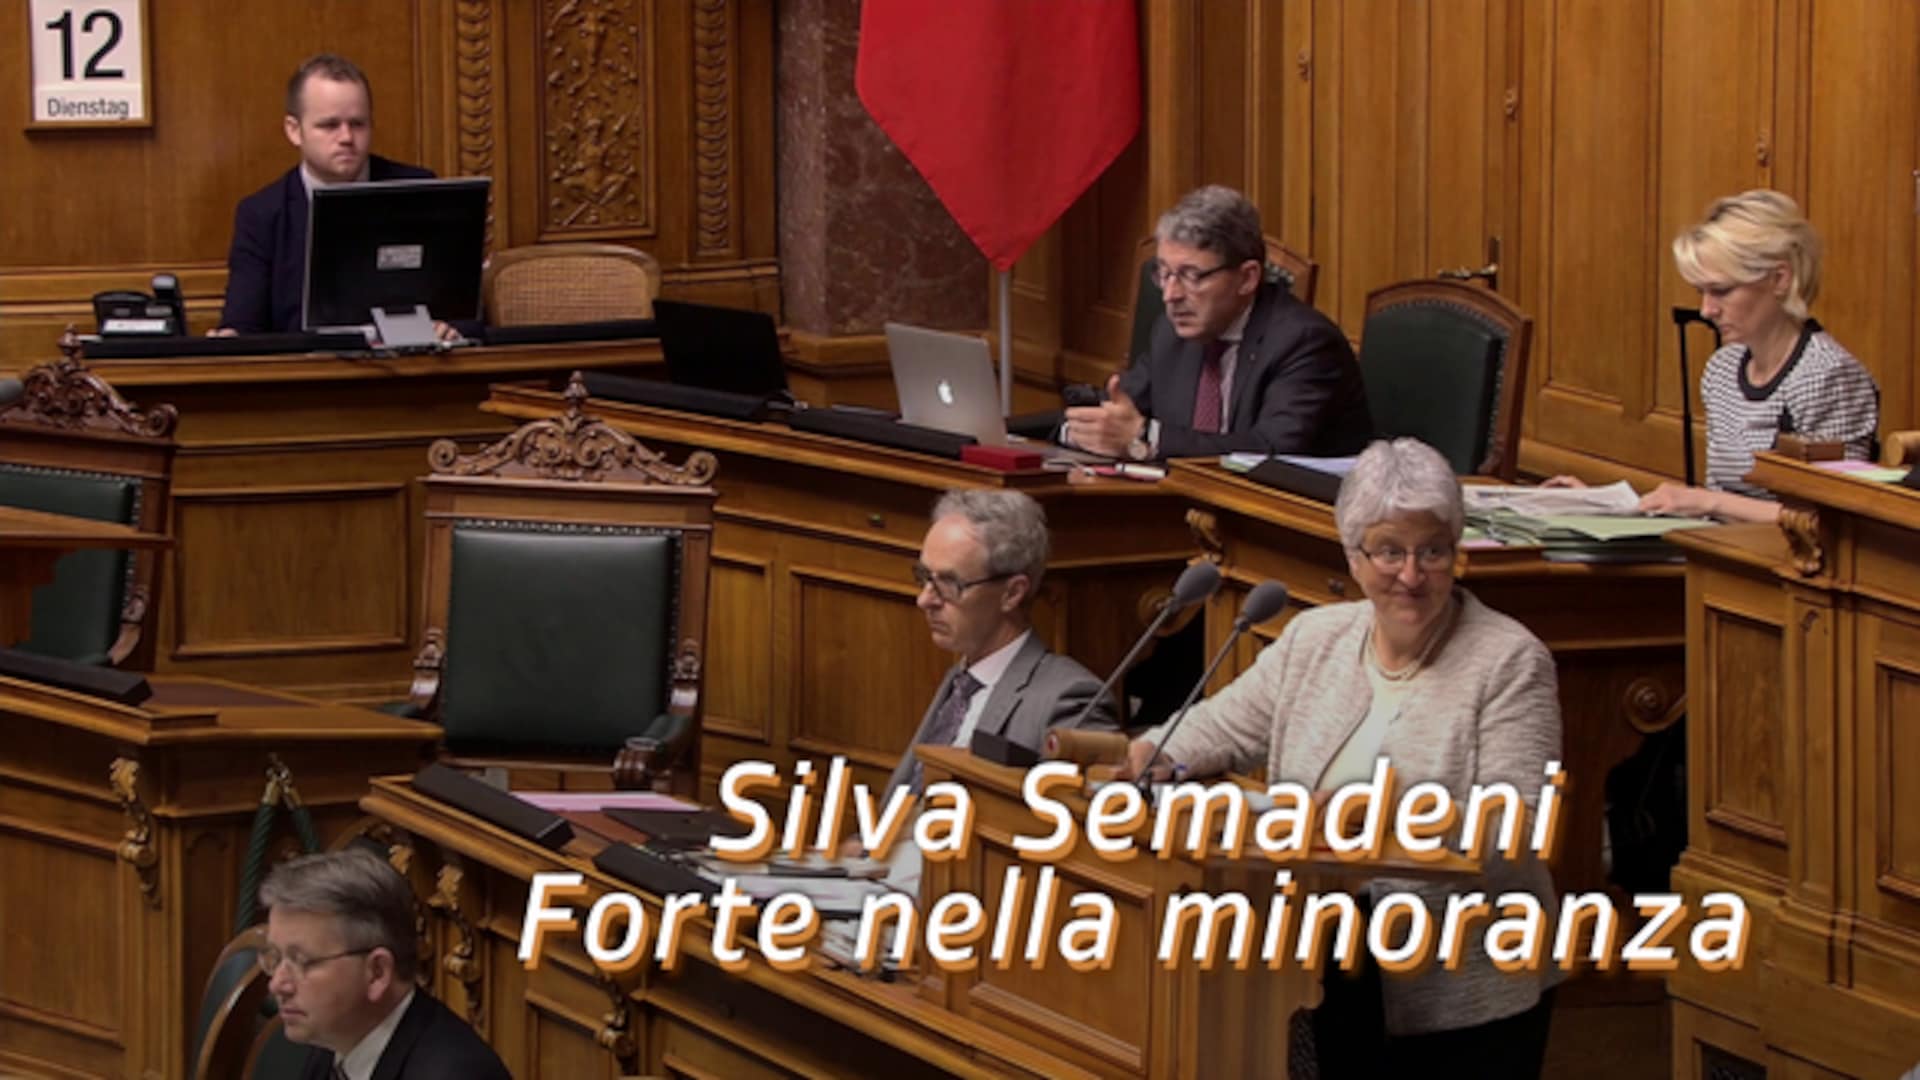 Silva Semadeni – Forte nella minoranza